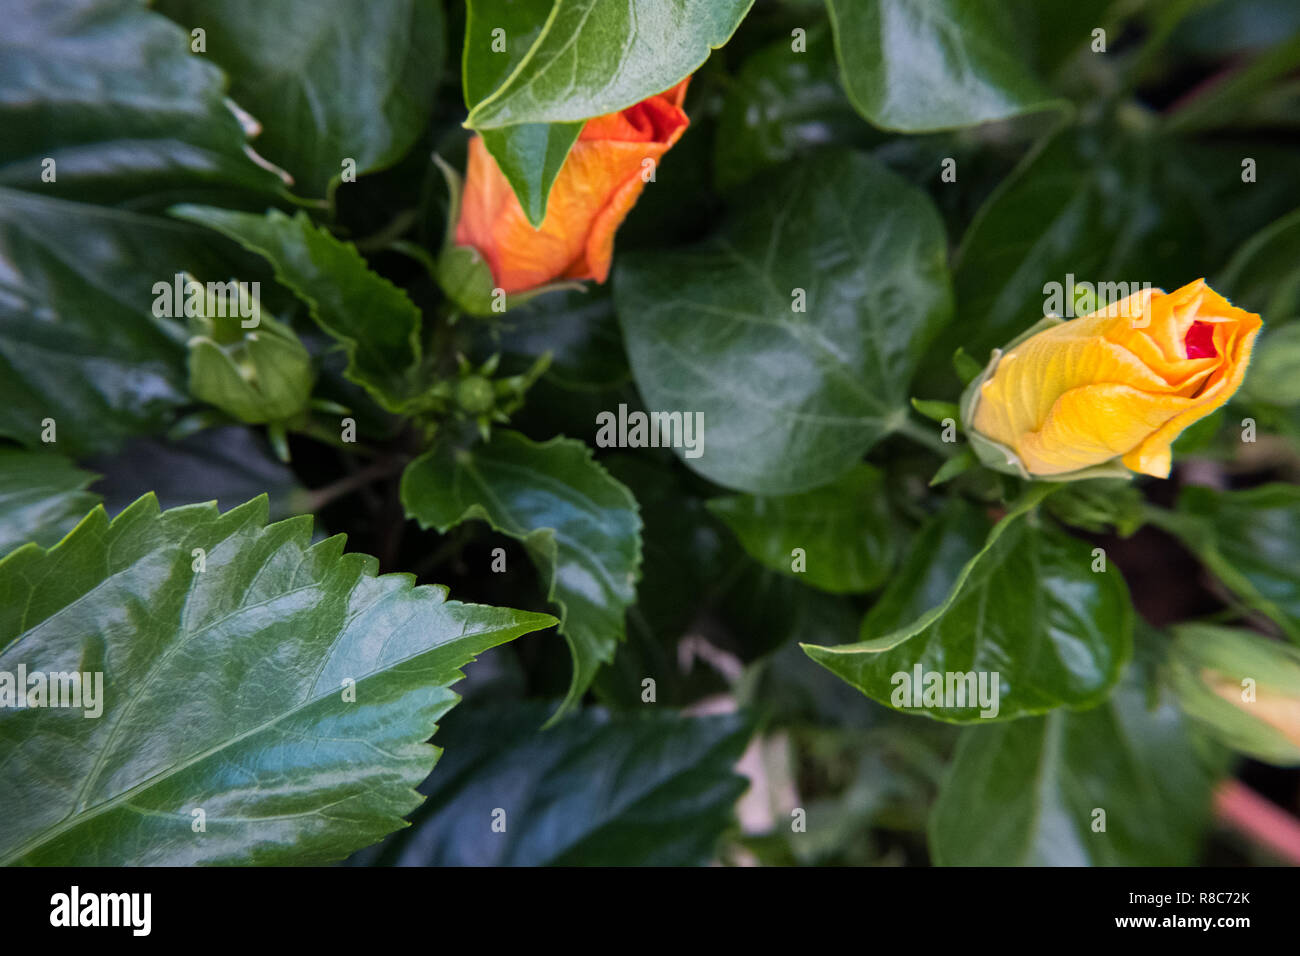 Natur wallpaper Hintergrund des blühenden Knospen gelb und orange Ibiscus Blume. Keine Menschen. Stockfoto